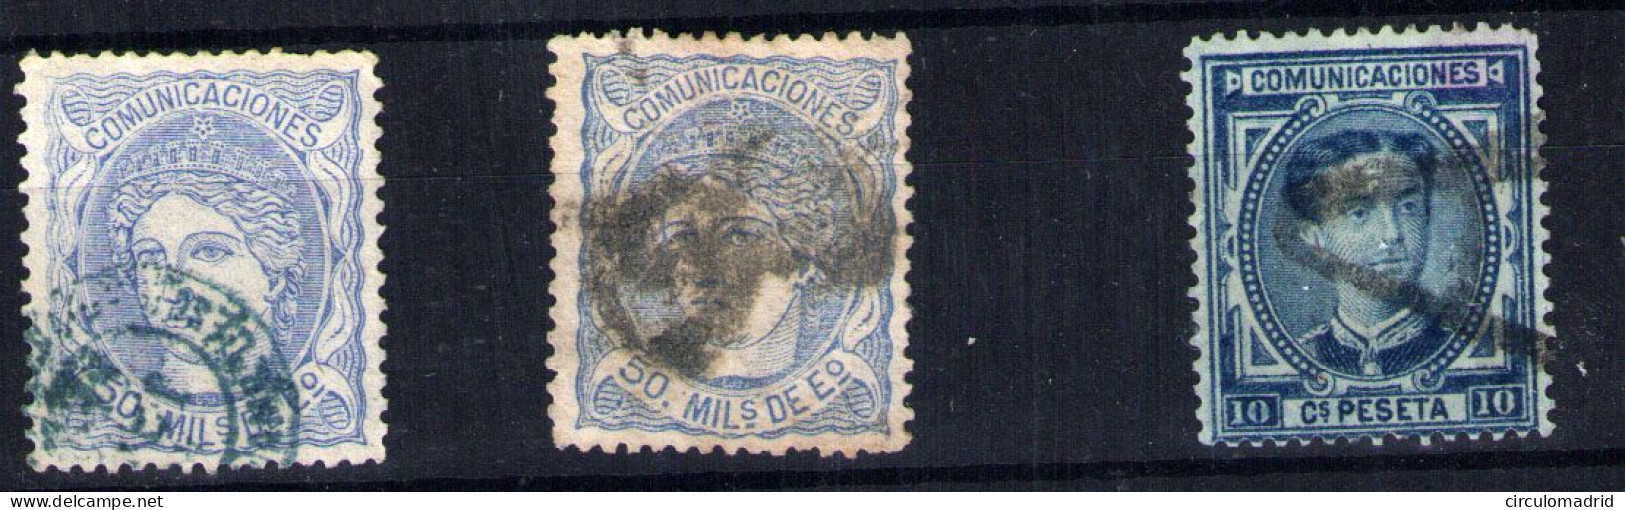 España Nº 102 Y 175. Año 1870 - Usados